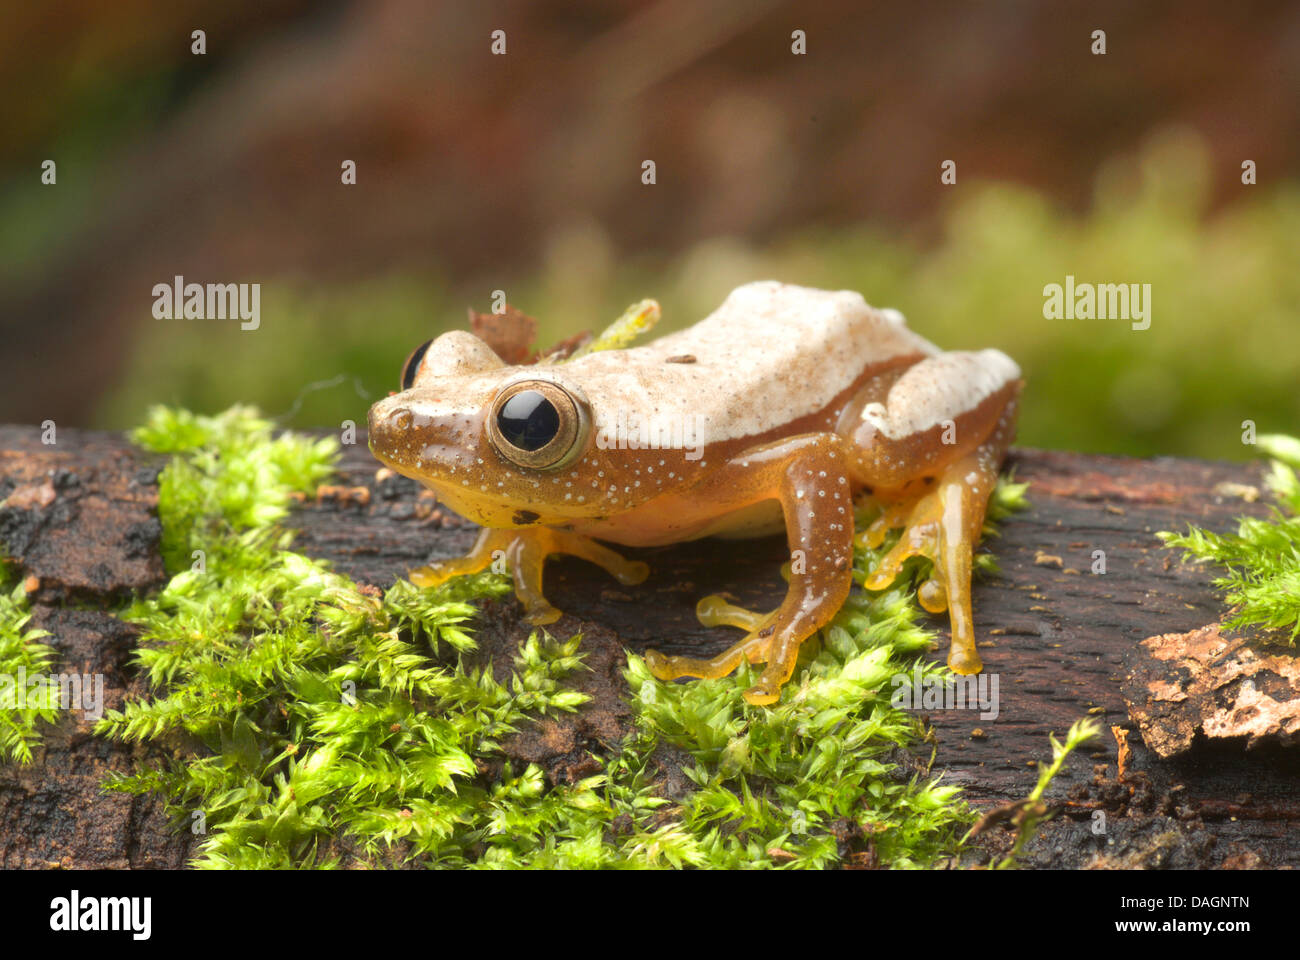 Fornasini's Spiny Reed Frog (Afrixalus fornasini), imago on mossy bark Stock Photo